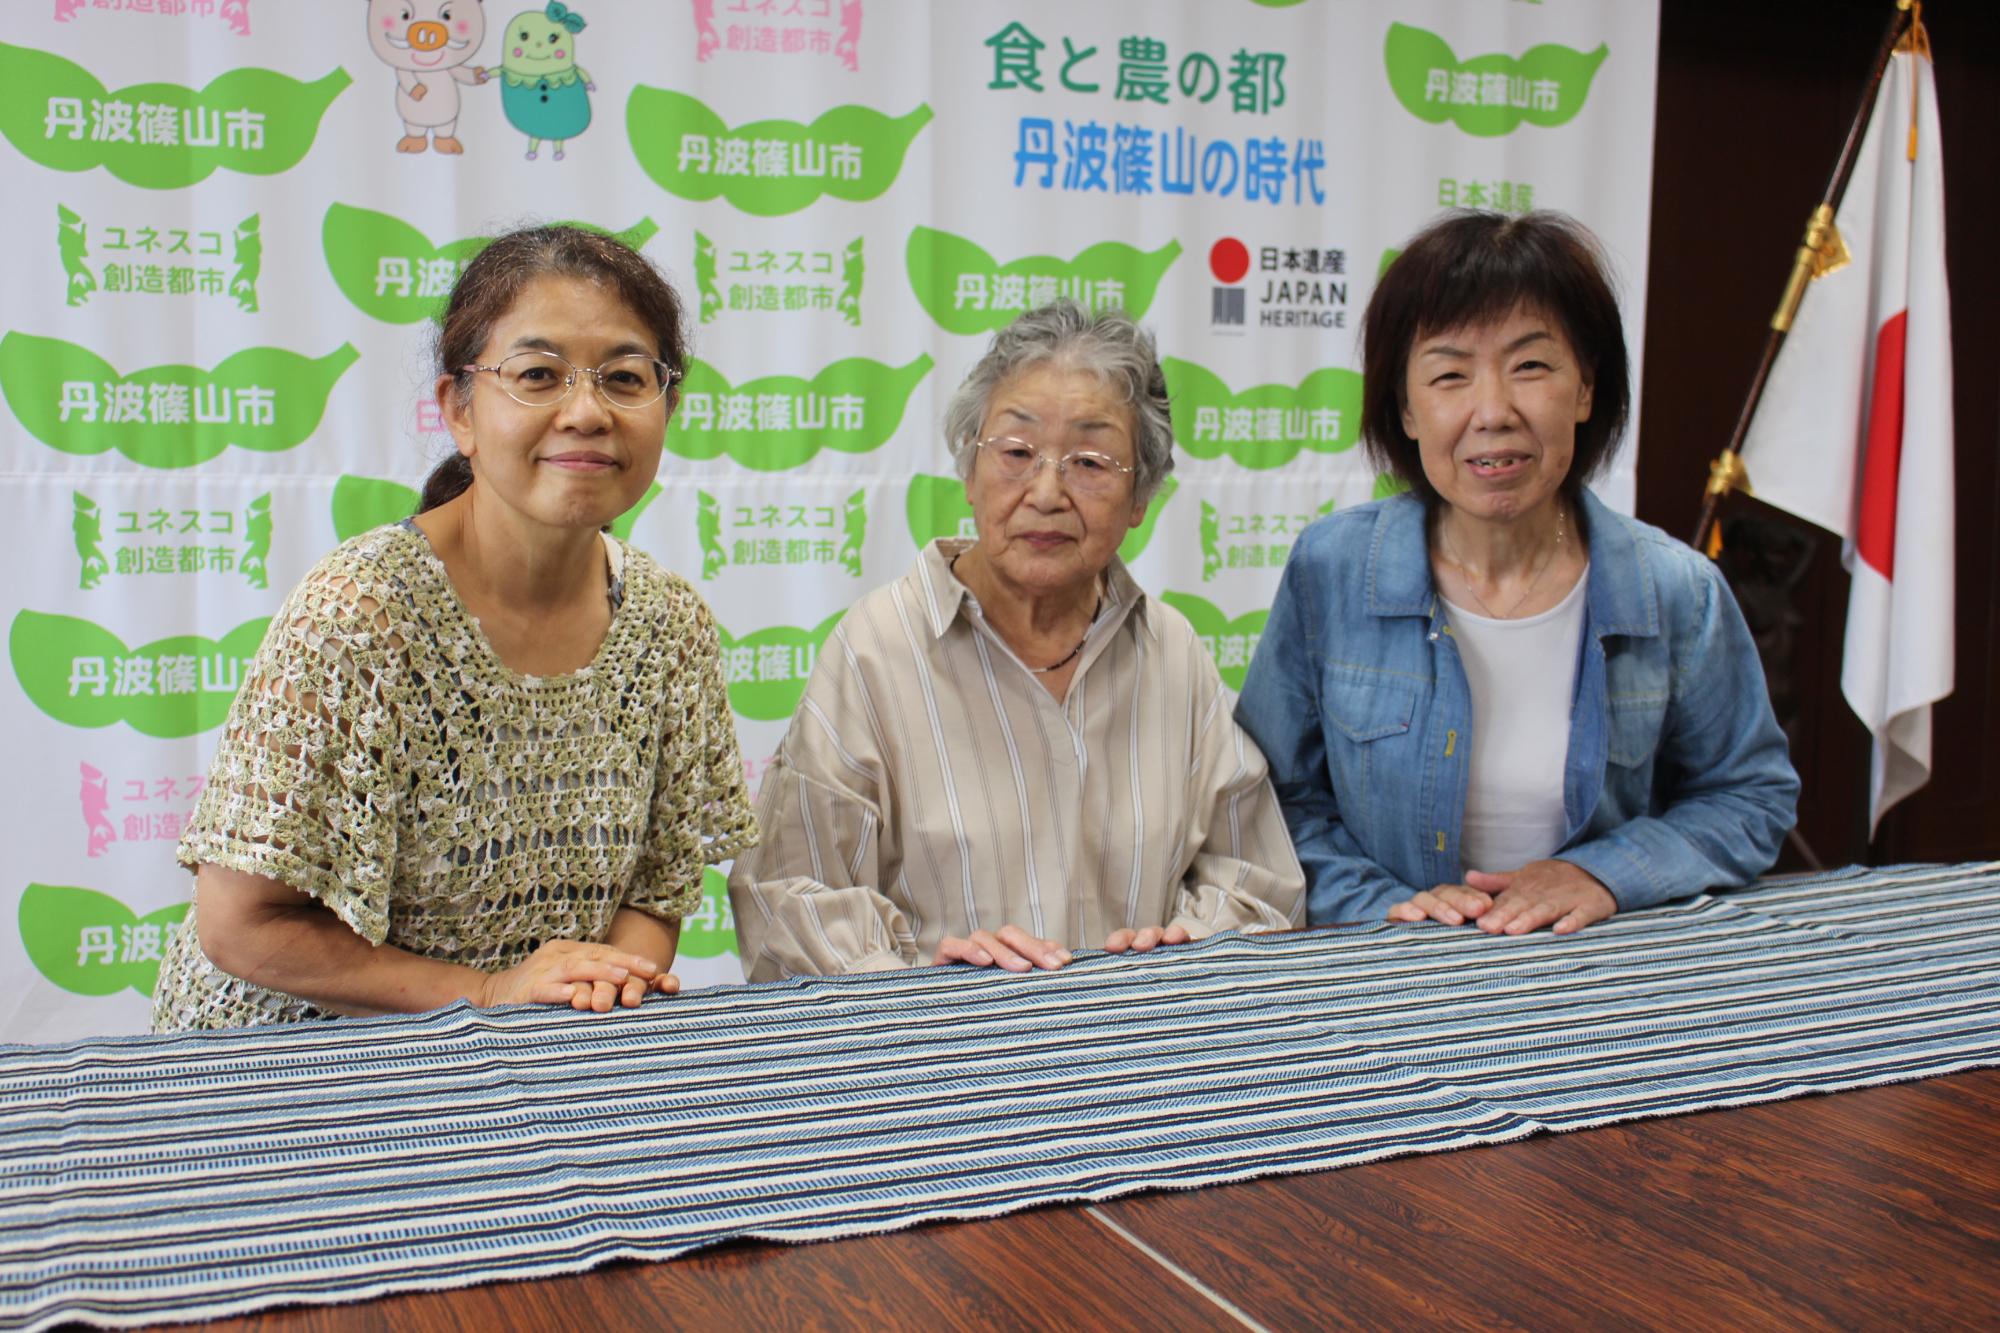 テーブルに、丹波木綿のテーブルセンターを広げて、製作された女性3人の記念撮影